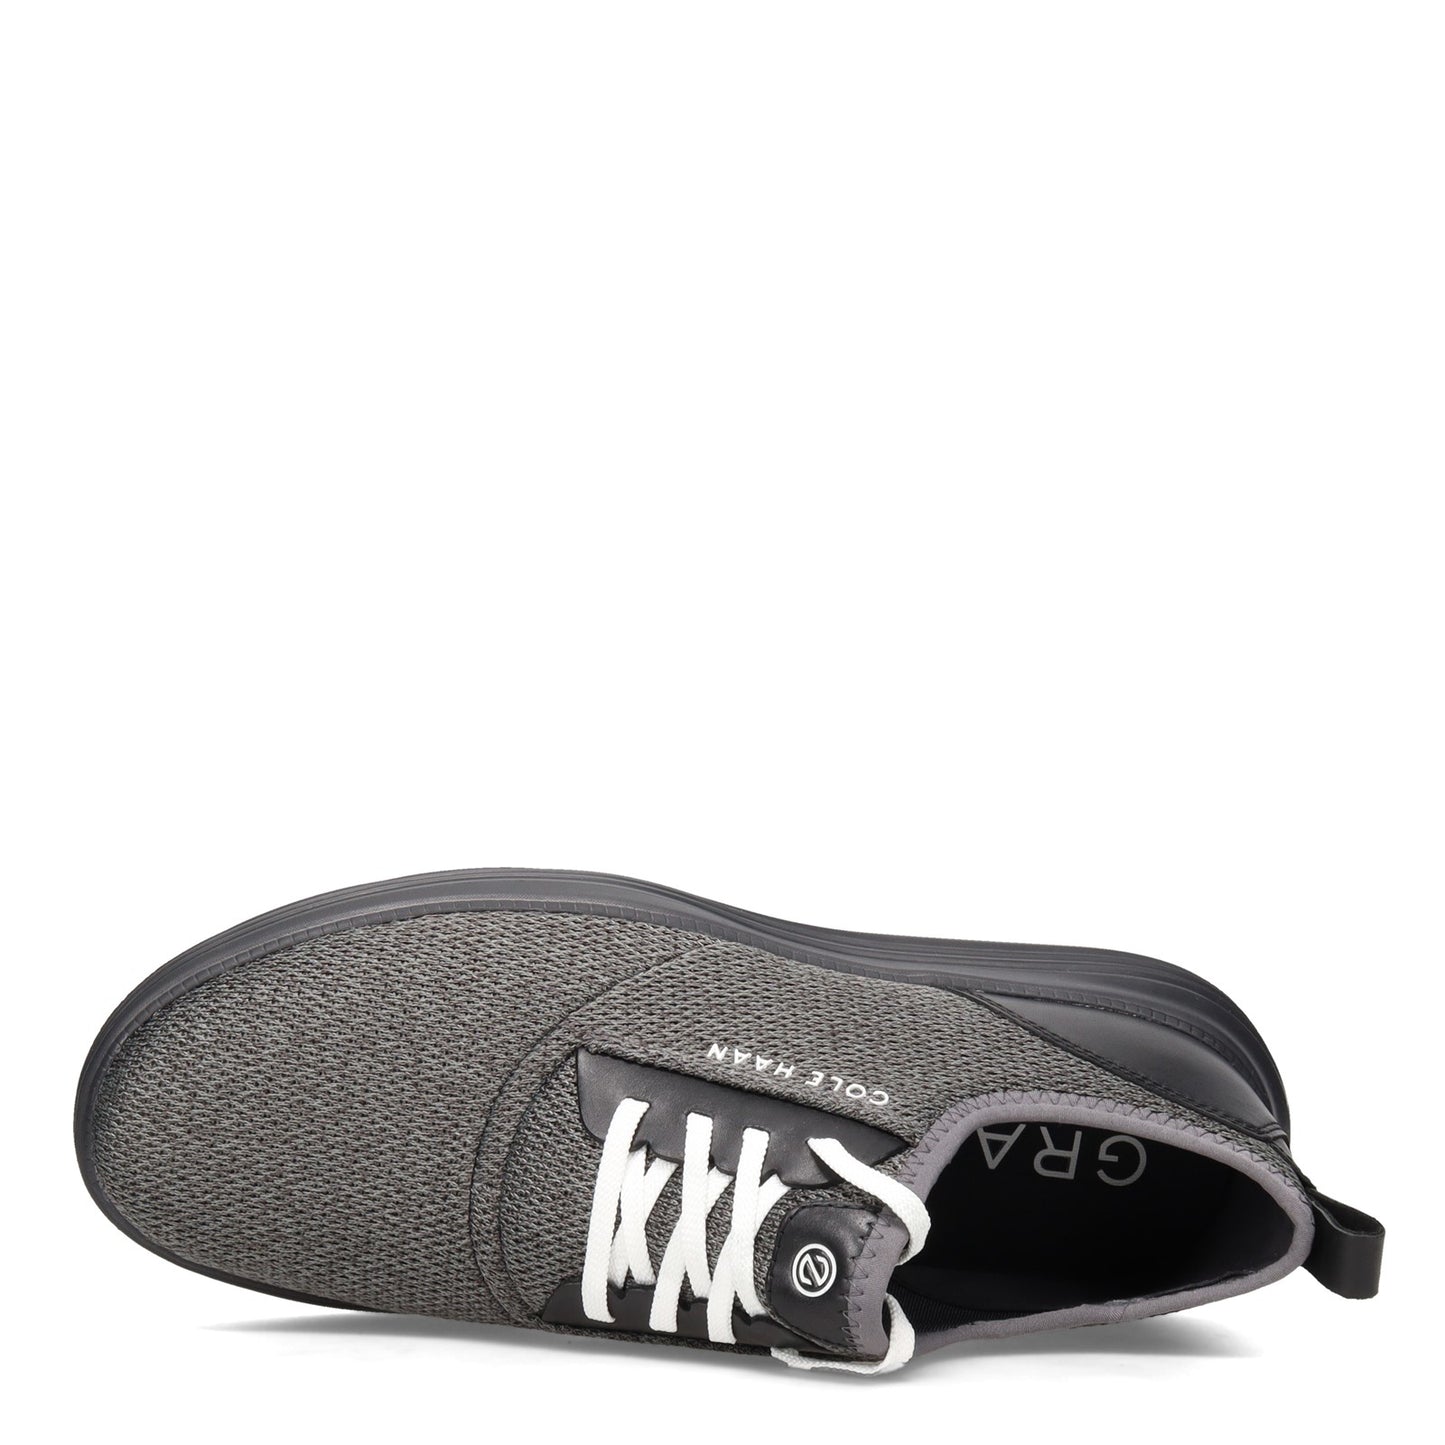 Peltz Shoes  Men's Cole Haan Grandsport Journey Sneaker BLACK MAGNET C32583